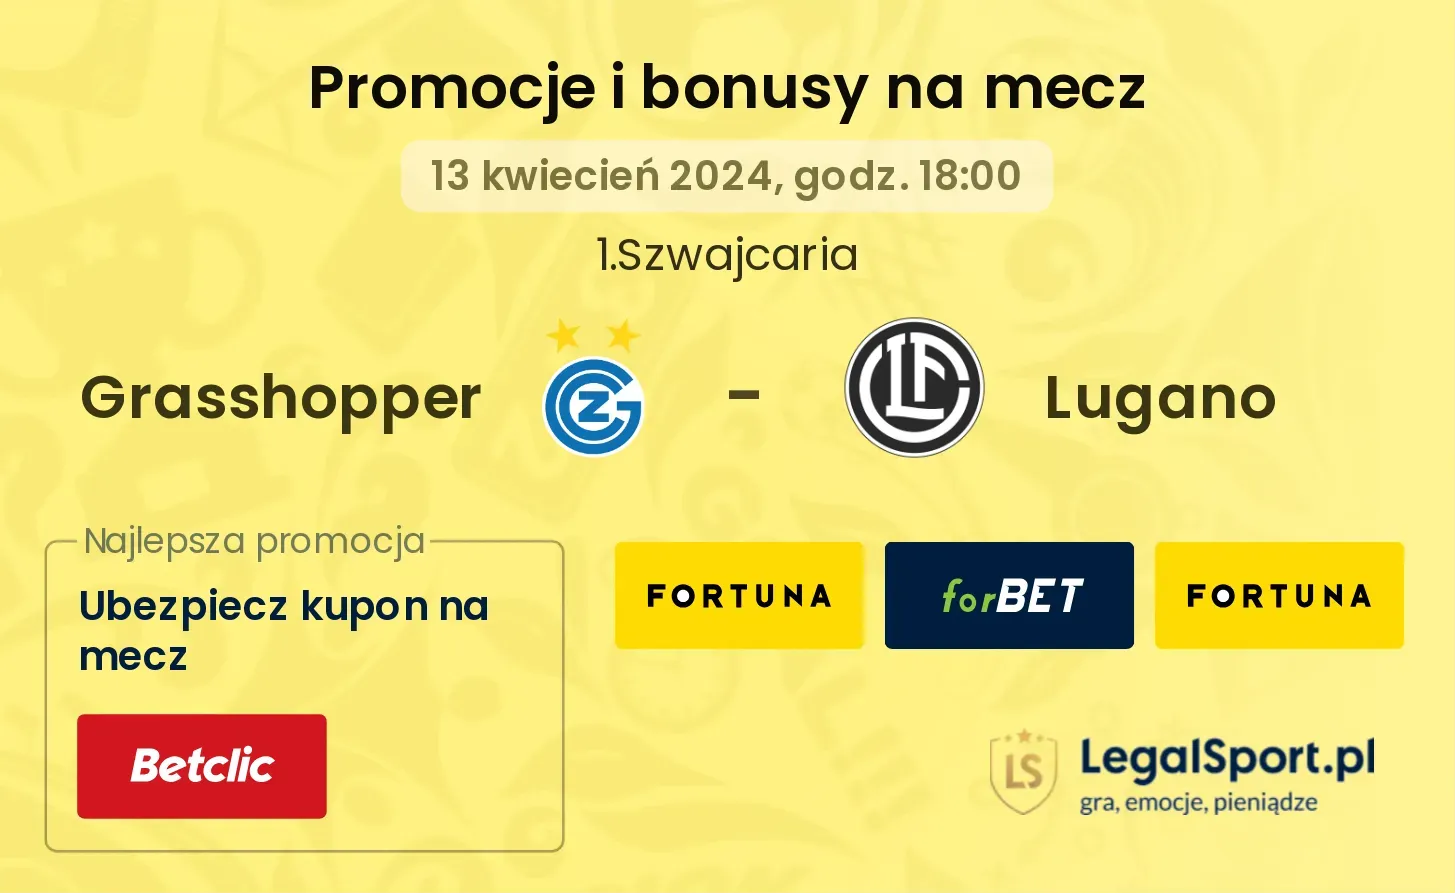 Grasshopper - Lugano promocje bonusy na mecz